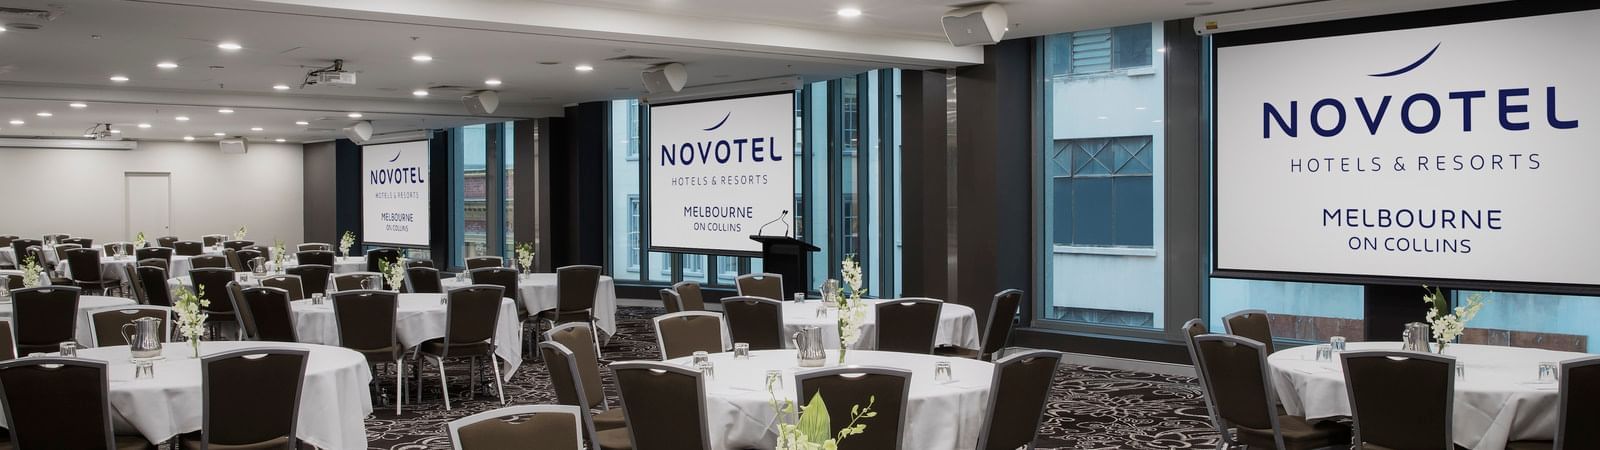 Banquet table setup for event at Novotel Melbourne on Collins